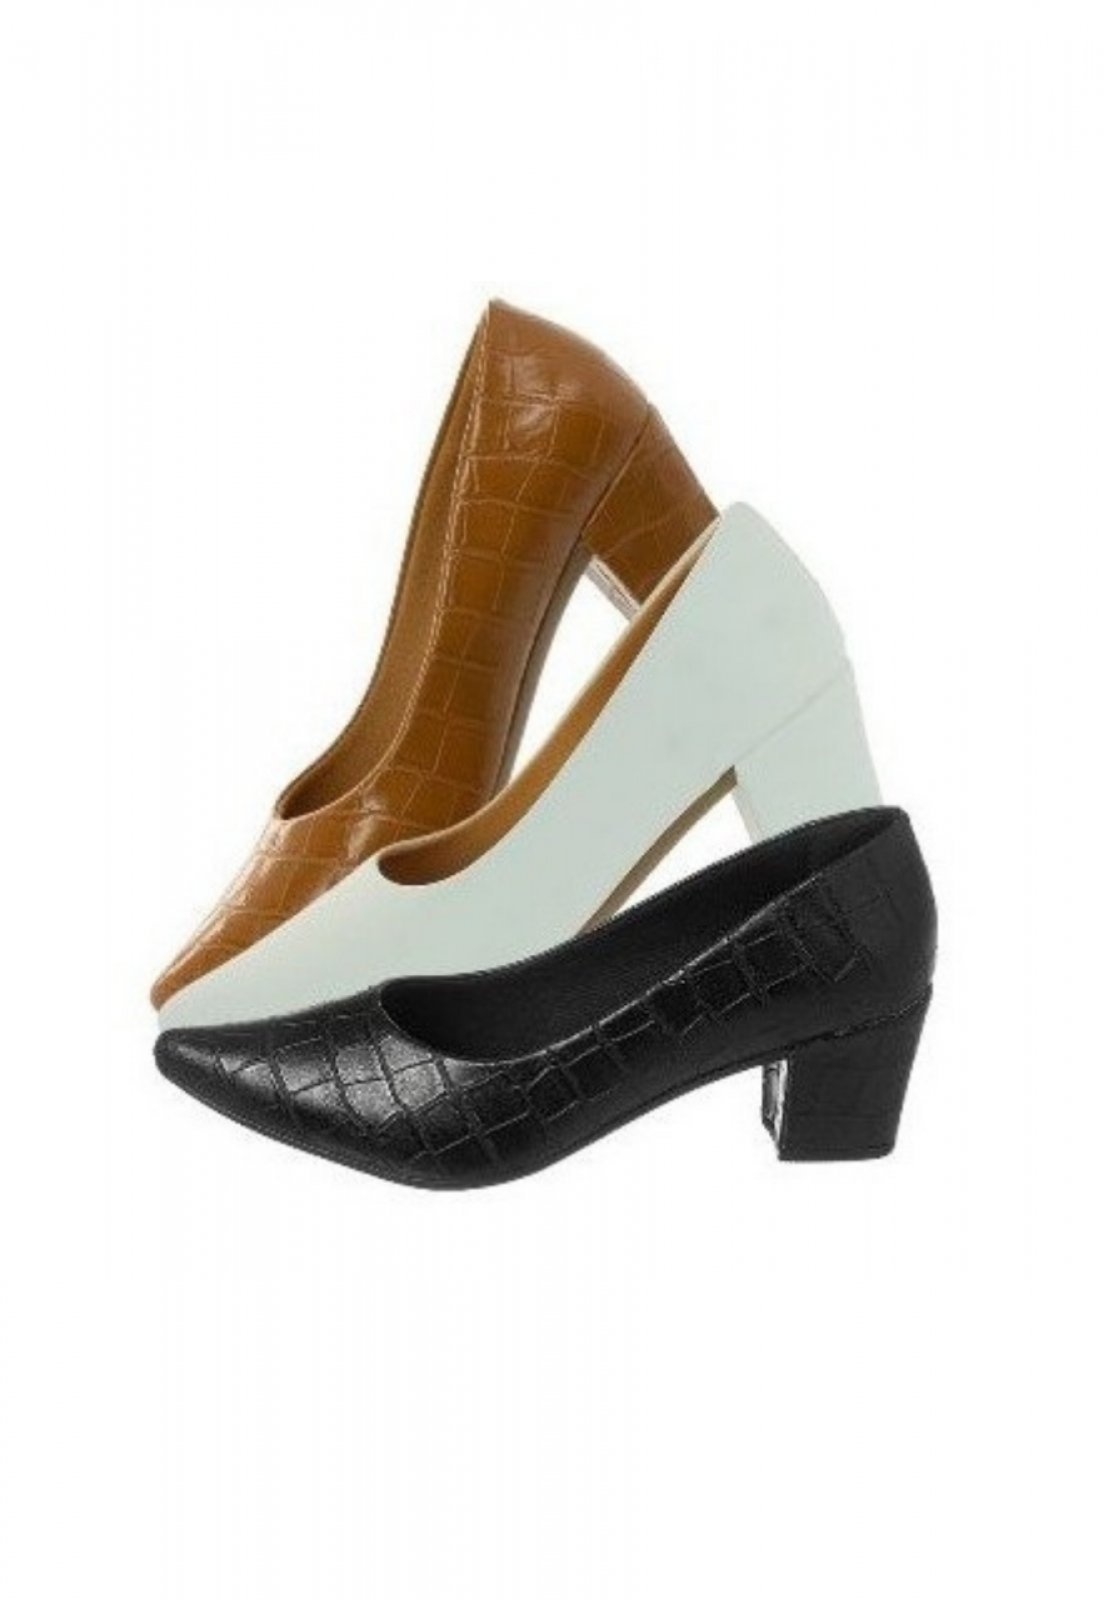 kit 3 Sapatos Scarpin feminino Bico Fino Salto Grosso Conforto preto croco, caramelo croco e branco